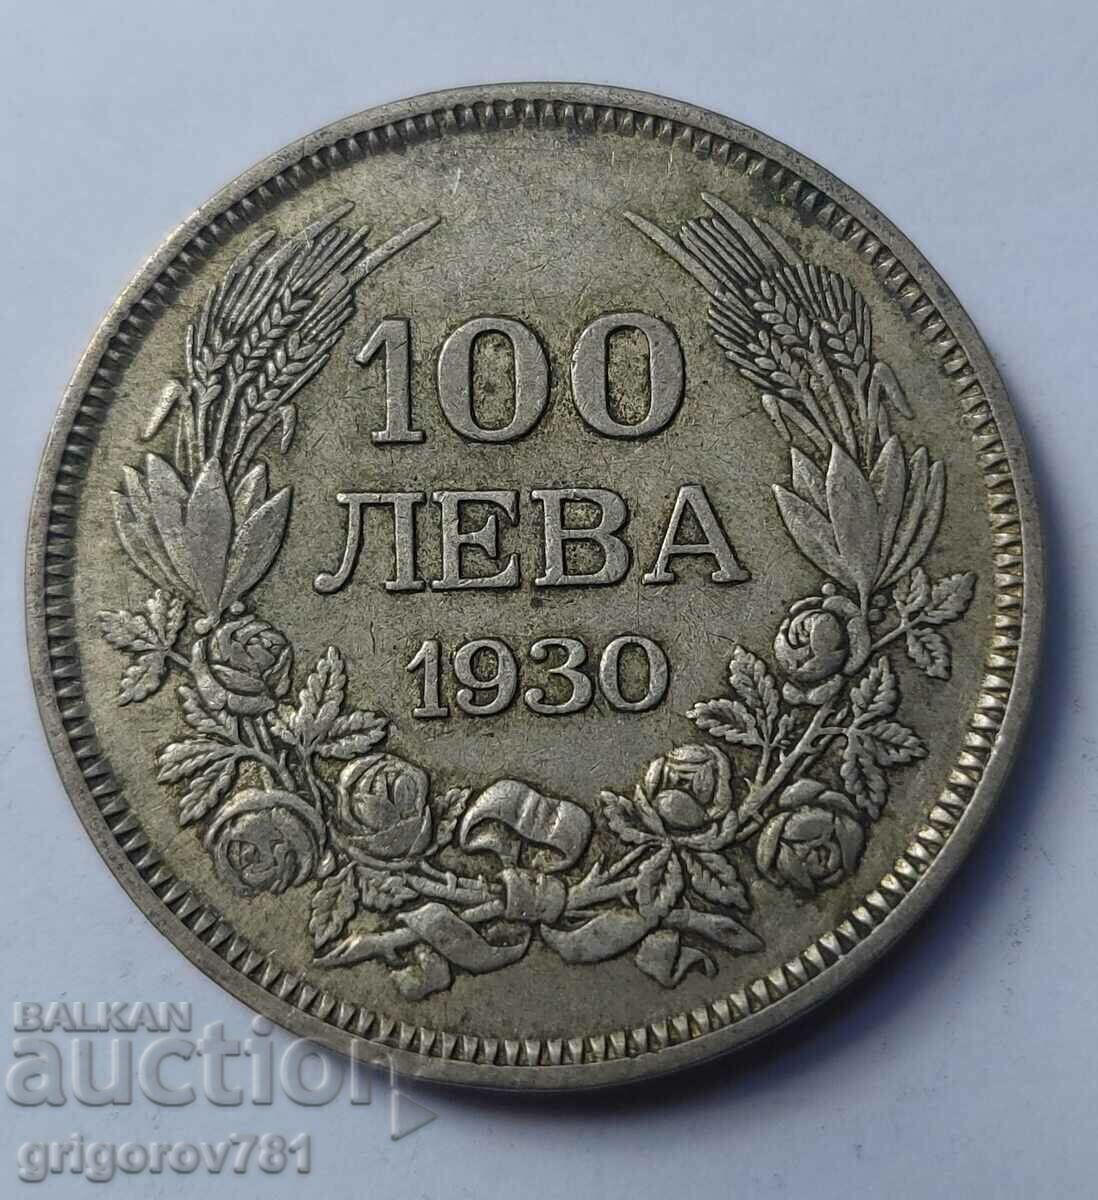 100 leva silver Bulgaria 1930 - silver coin #40